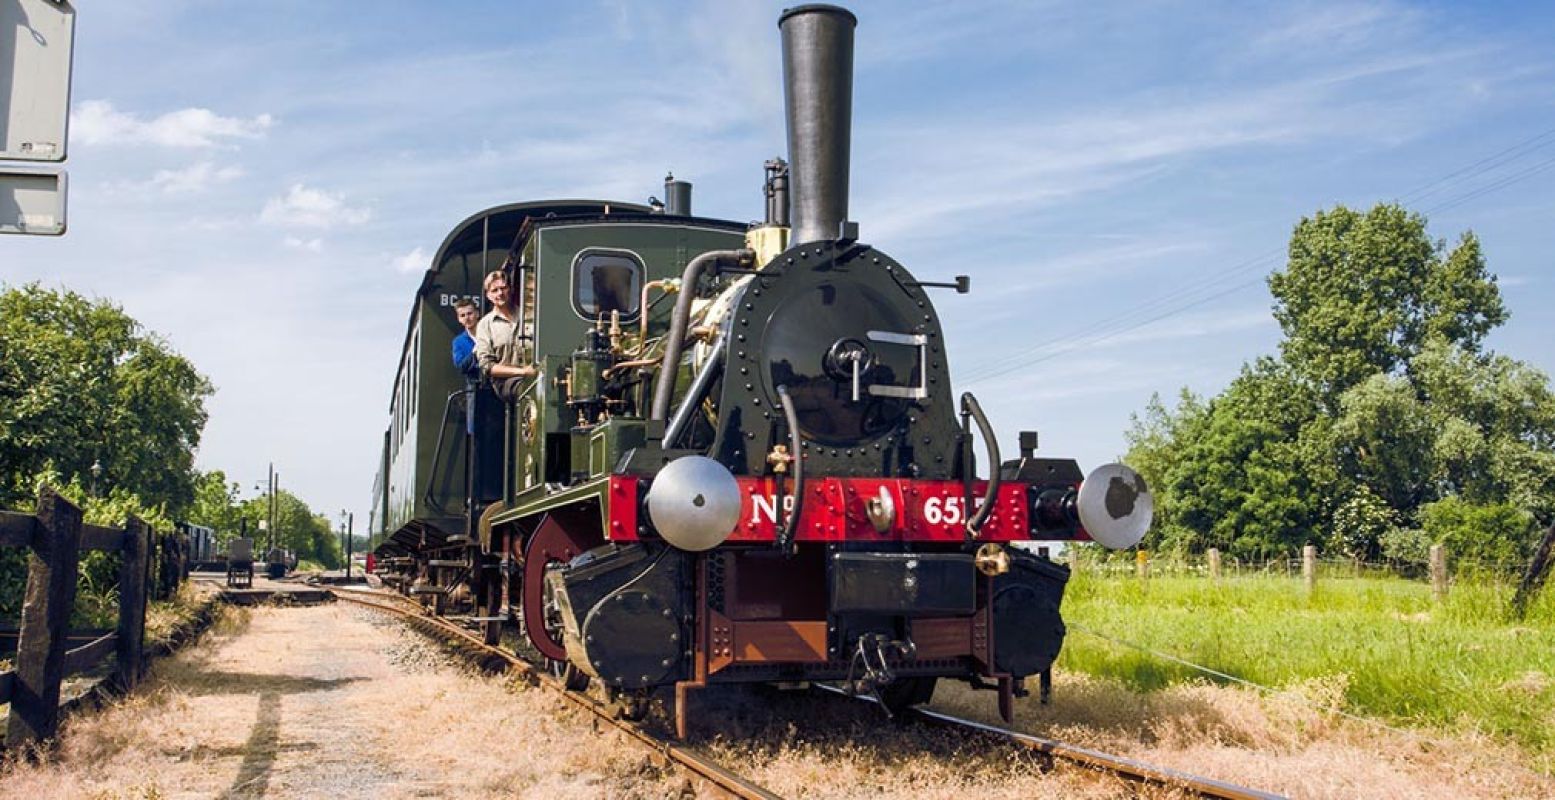 Rijd in augustus mee in de oudste nog rijdende locomotief van Nederland. Foto: Museumstoomtram Hoorn-Medemblik.